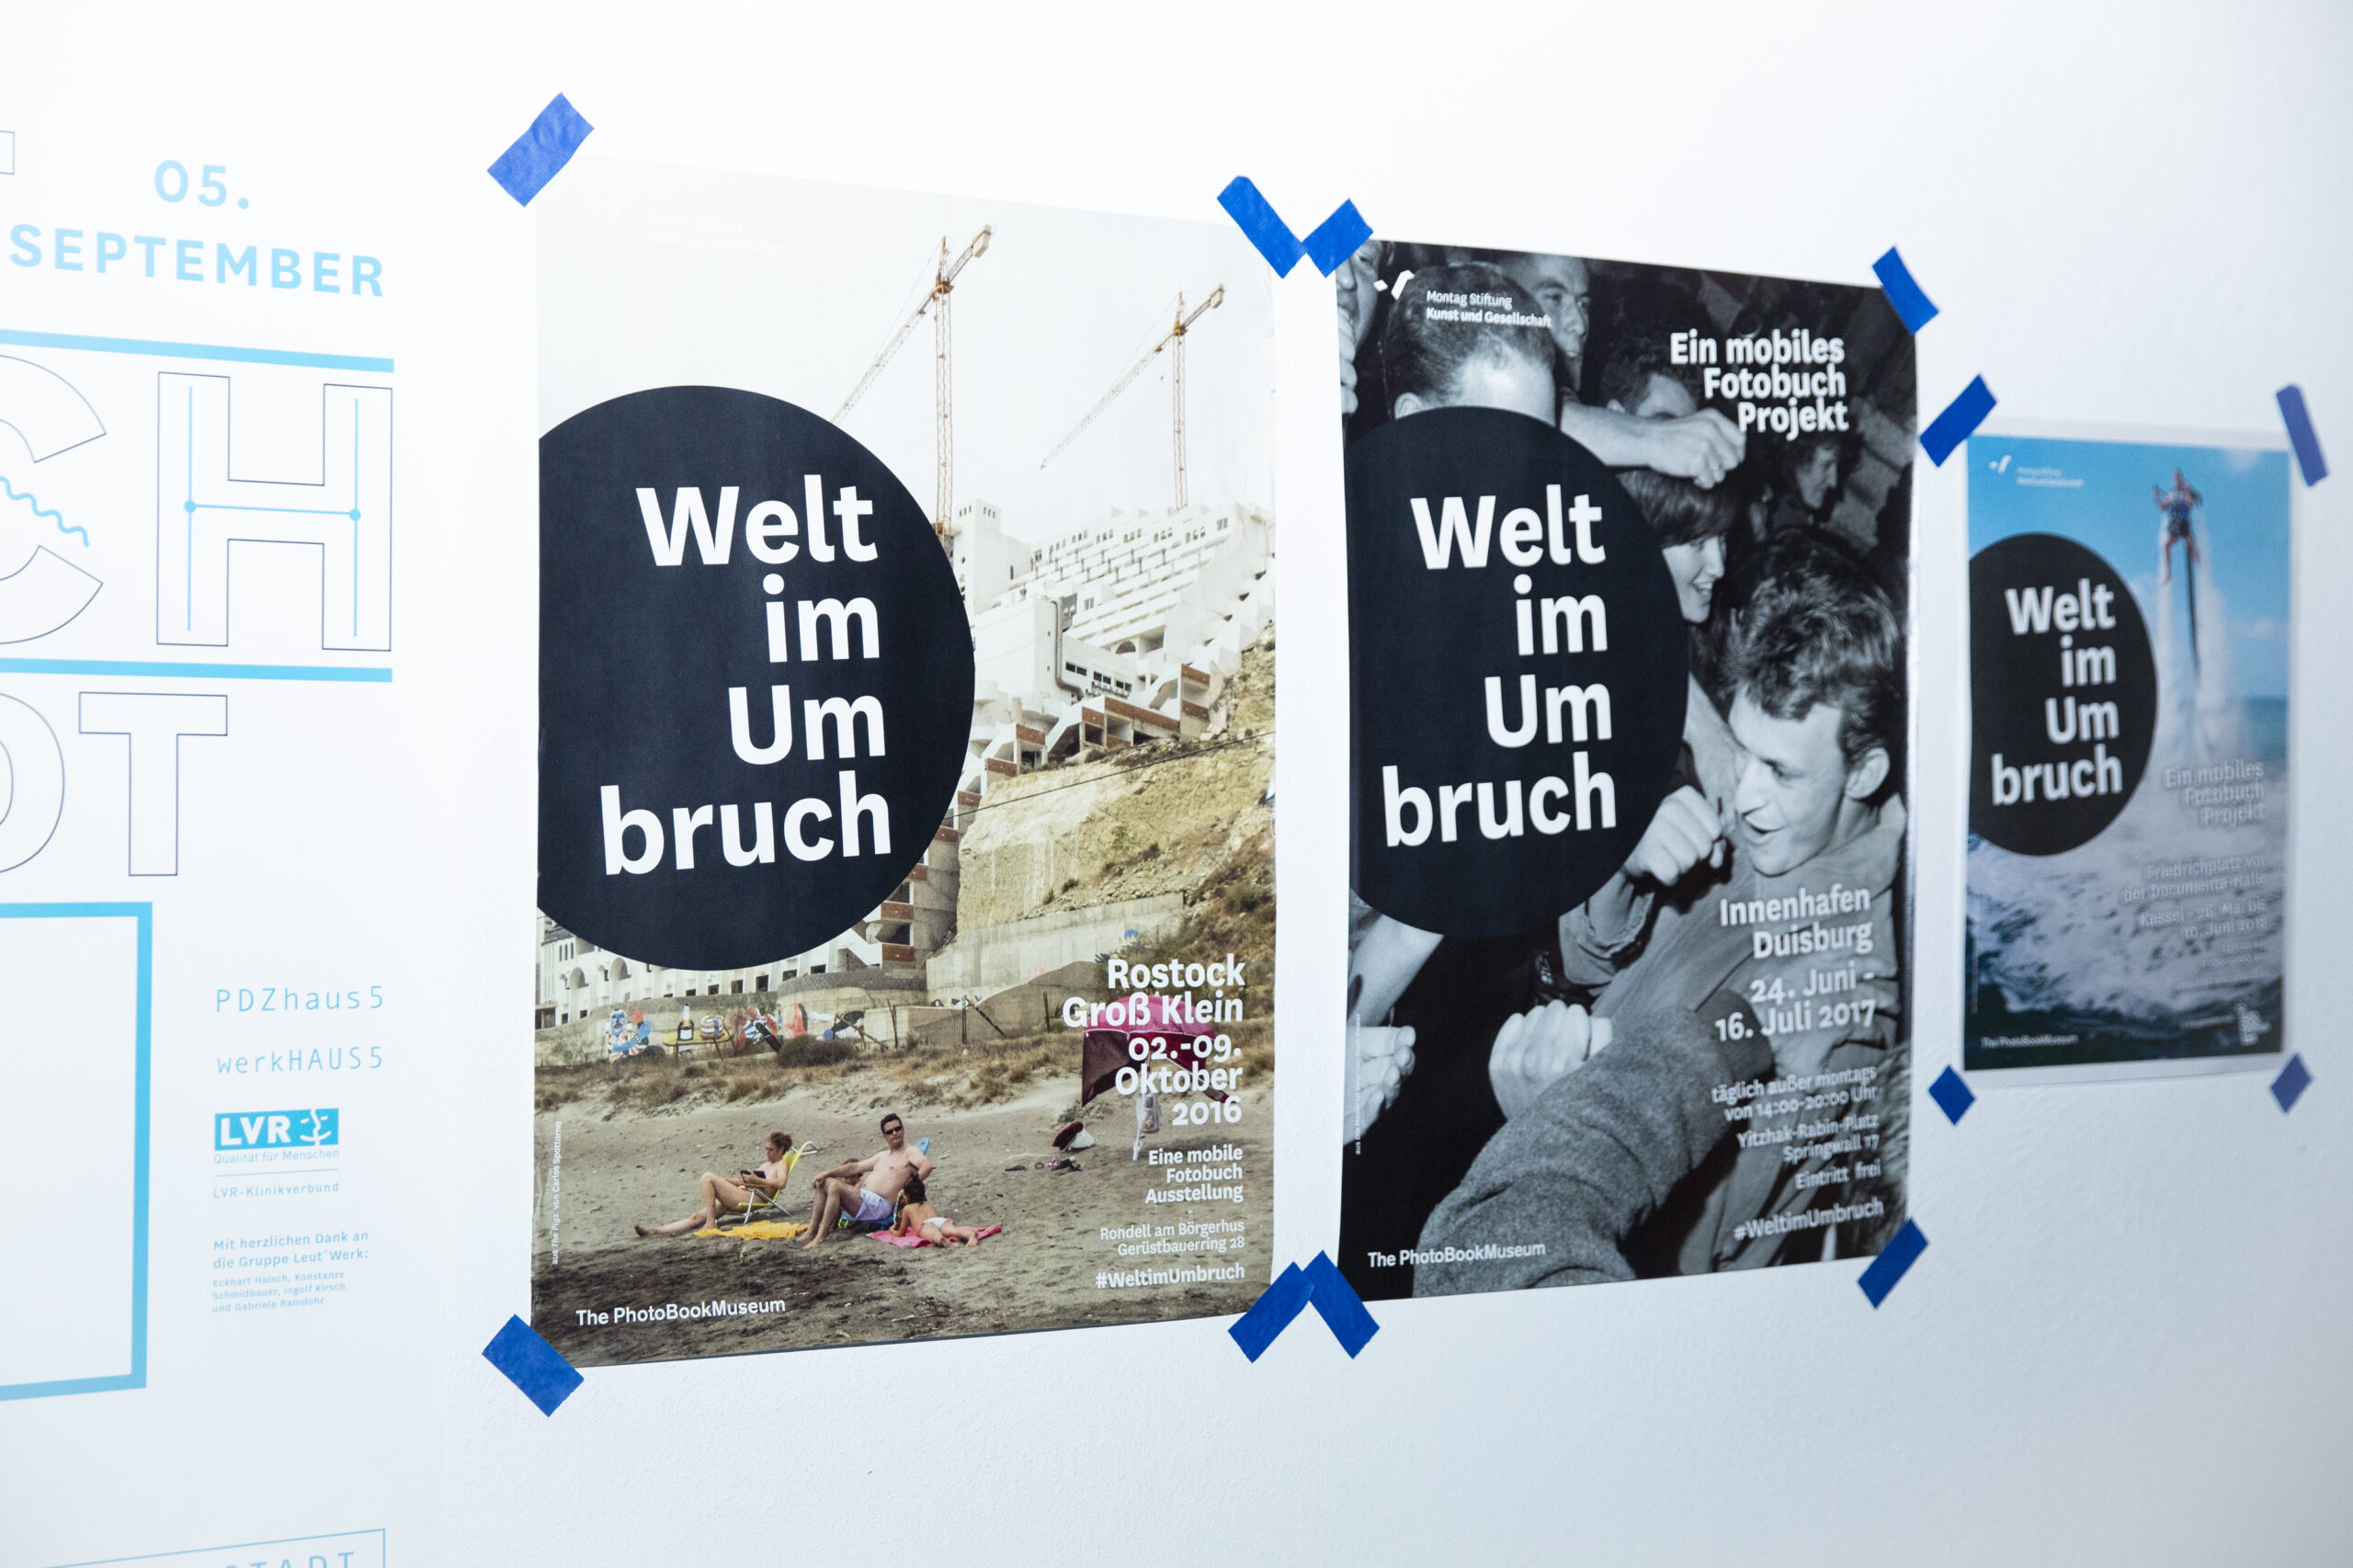 Welt im Umbruch - Ein mobiles Fotobuch Projekt in Kooperation mit dem PhotoBookMuseum von 2016-2018